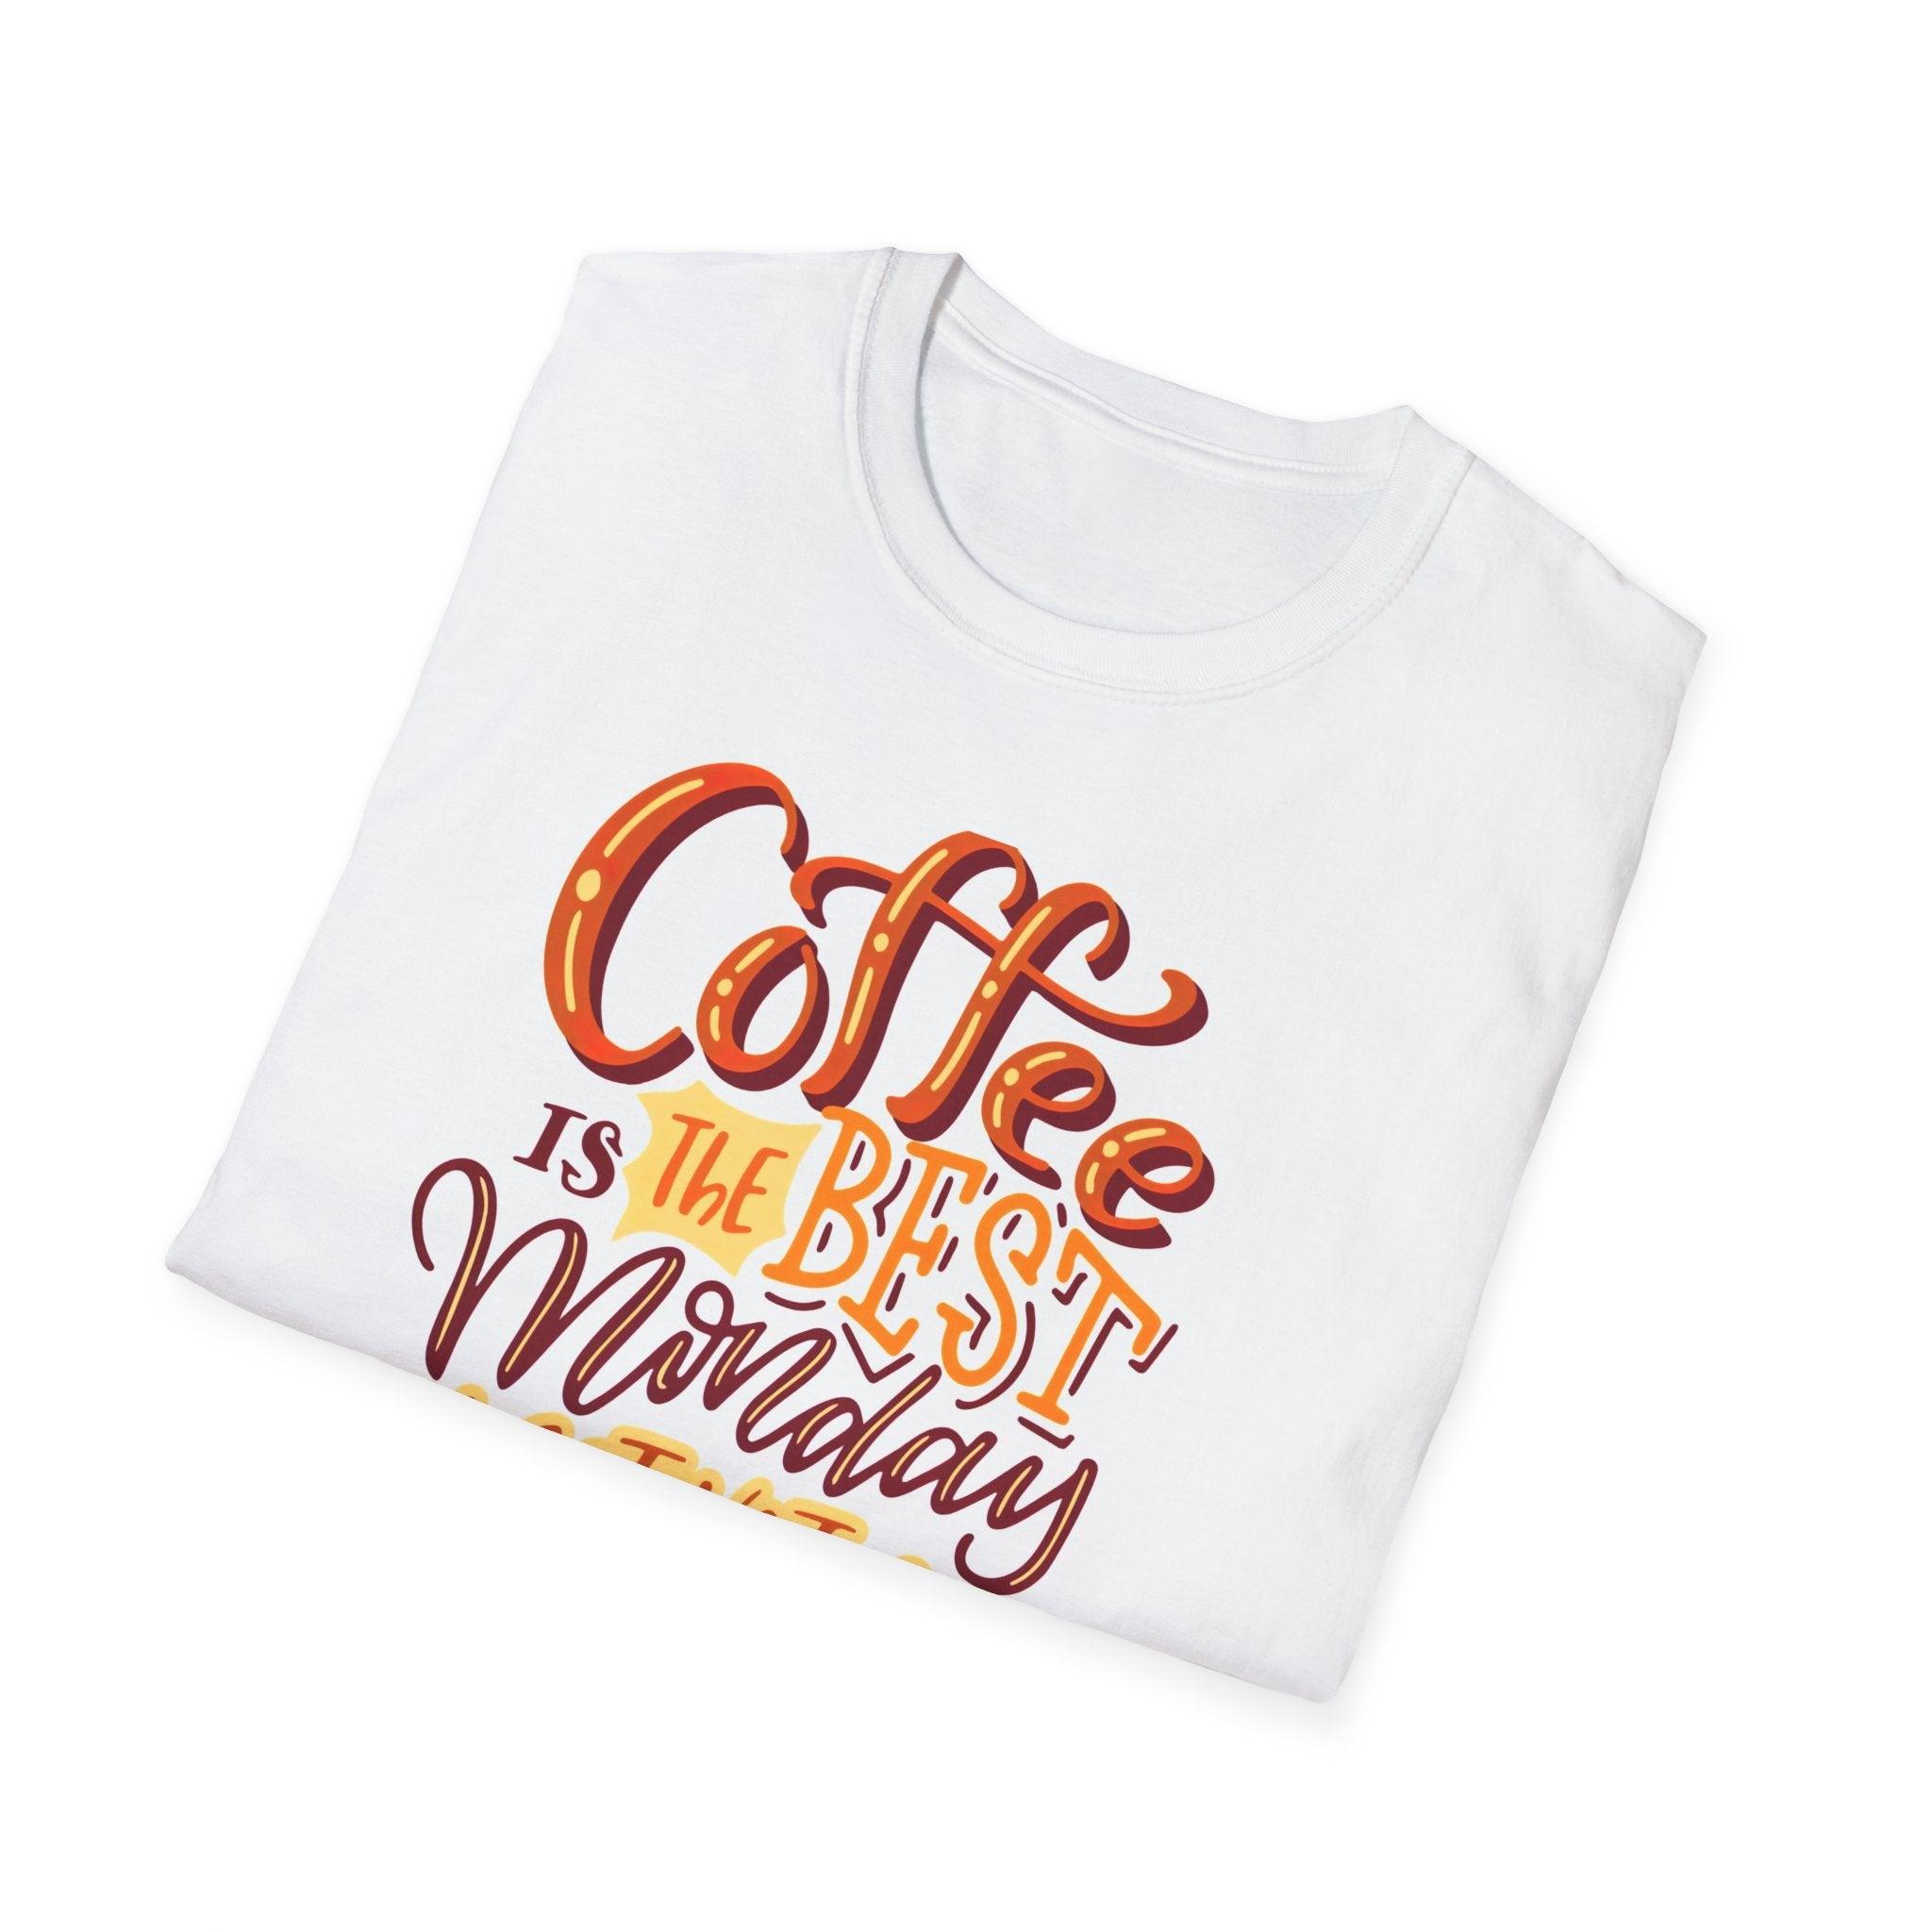 Coffee Monday motivation T-Shirt - Epic Shirts 403